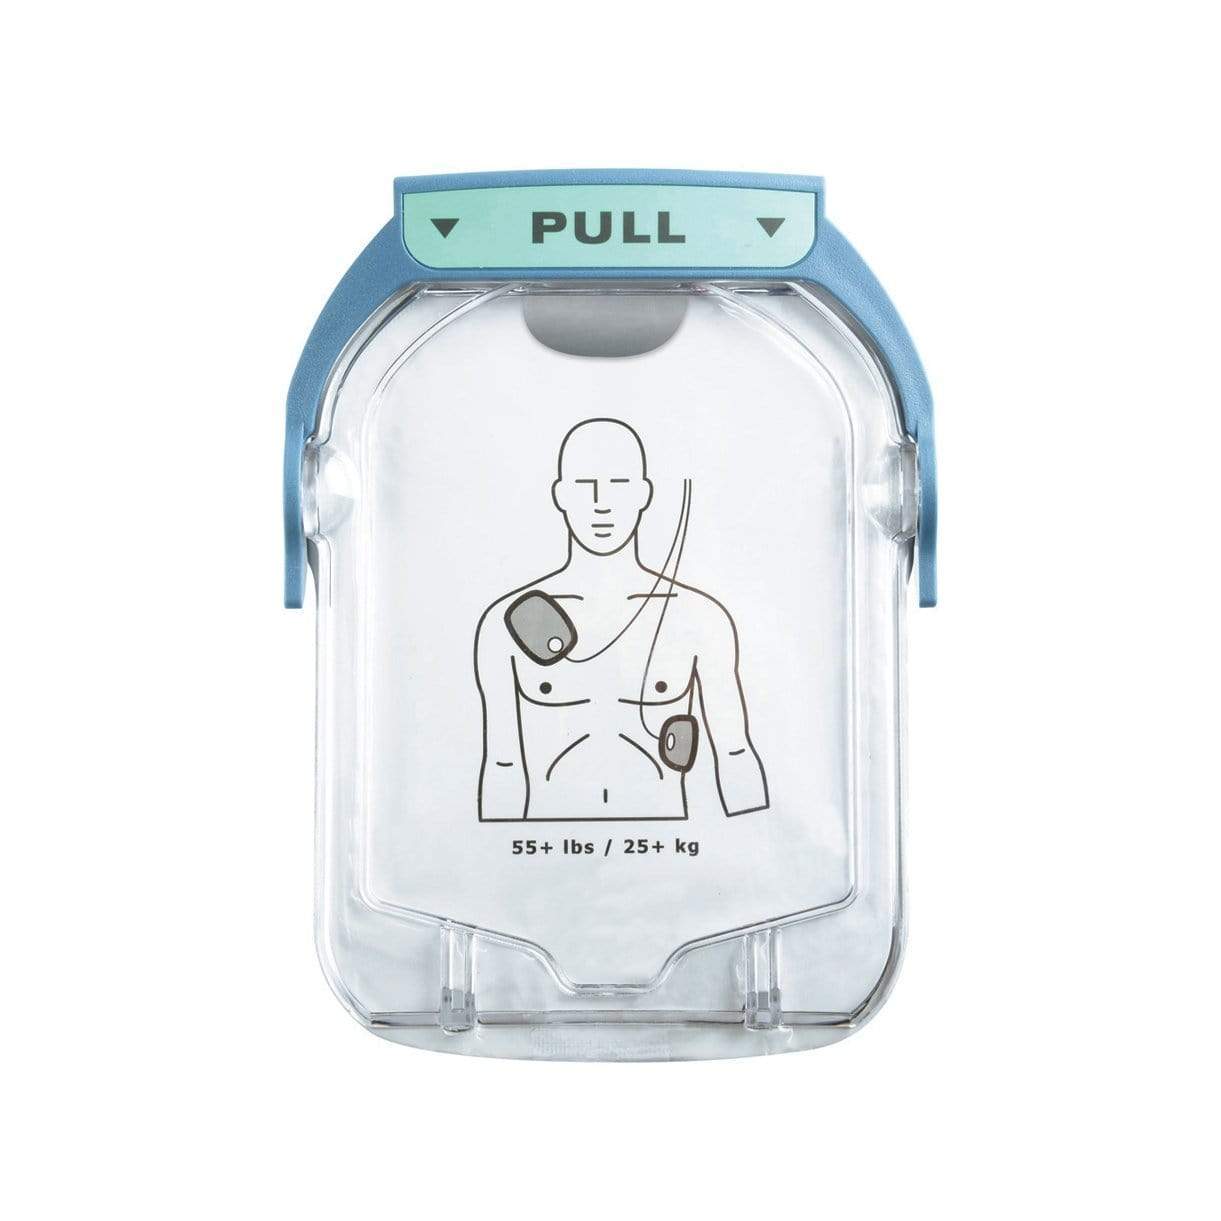 HeartStart HS1 First Aid SMART Defibrillator Pads